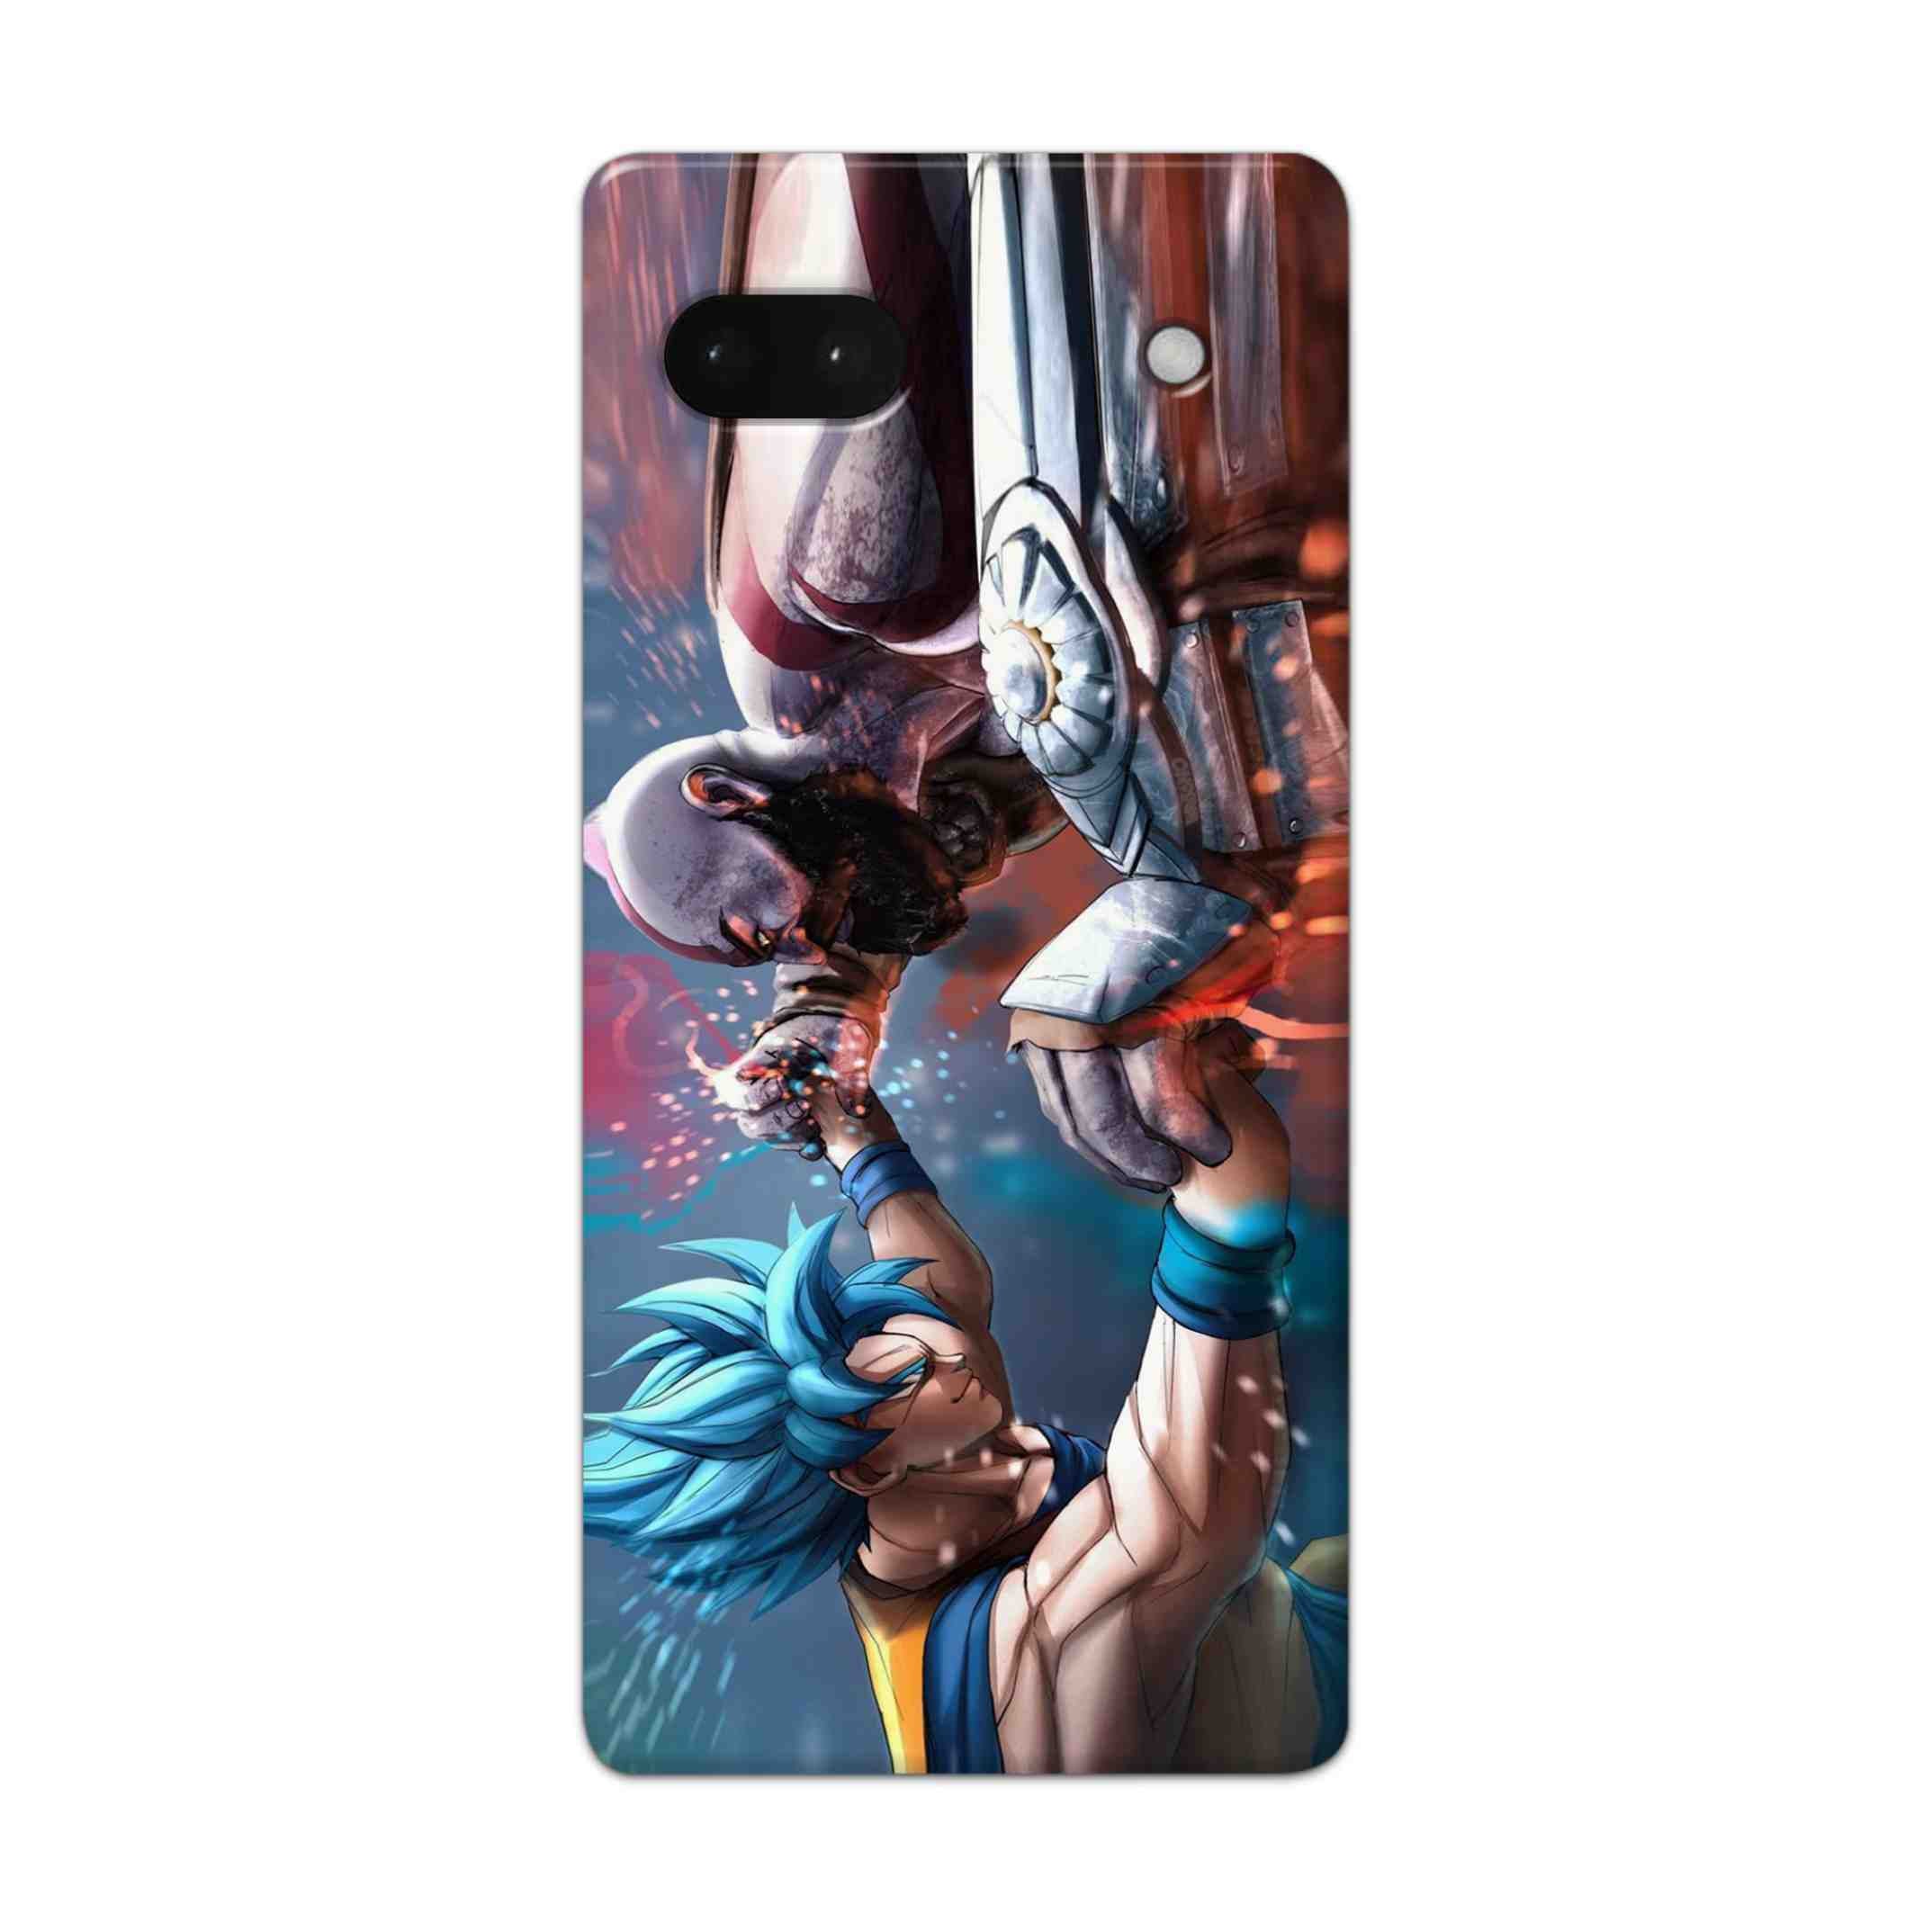 Buy Goku Vs Kratos Hard Back Mobile Phone Case Cover For Google Pixel 6a Online